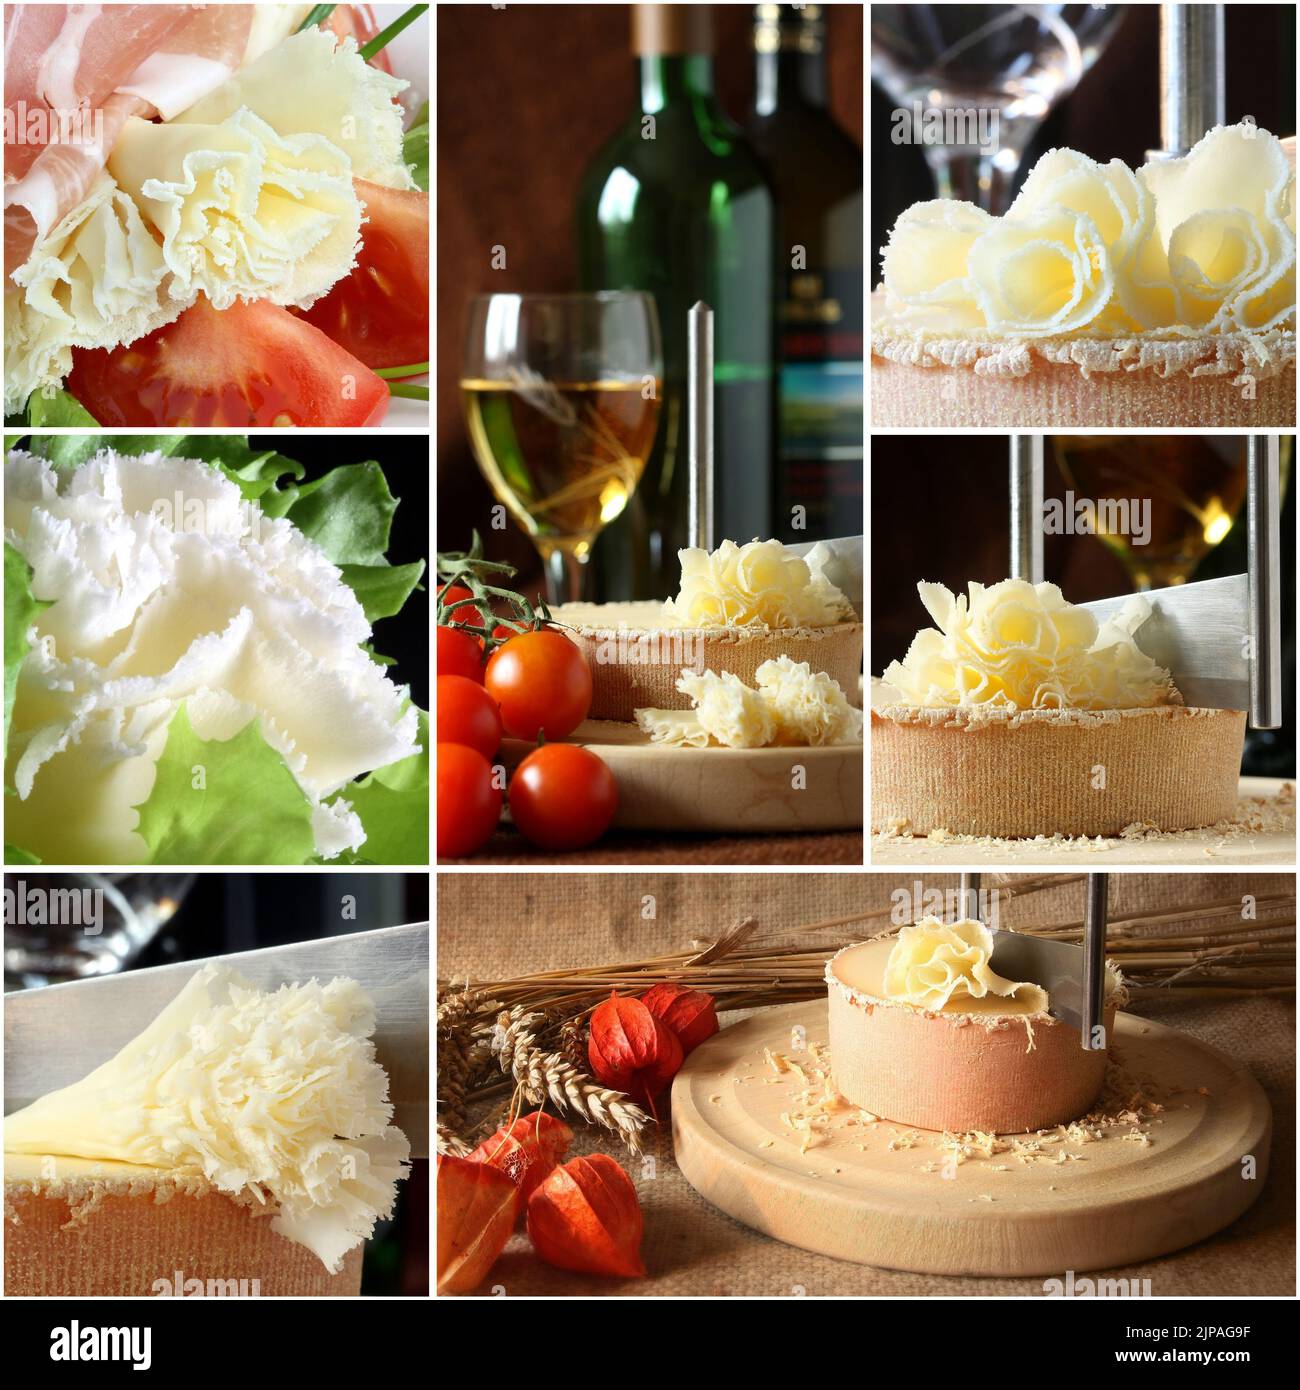 Collage au fromage suisse - Tete de Moine Banque D'Images